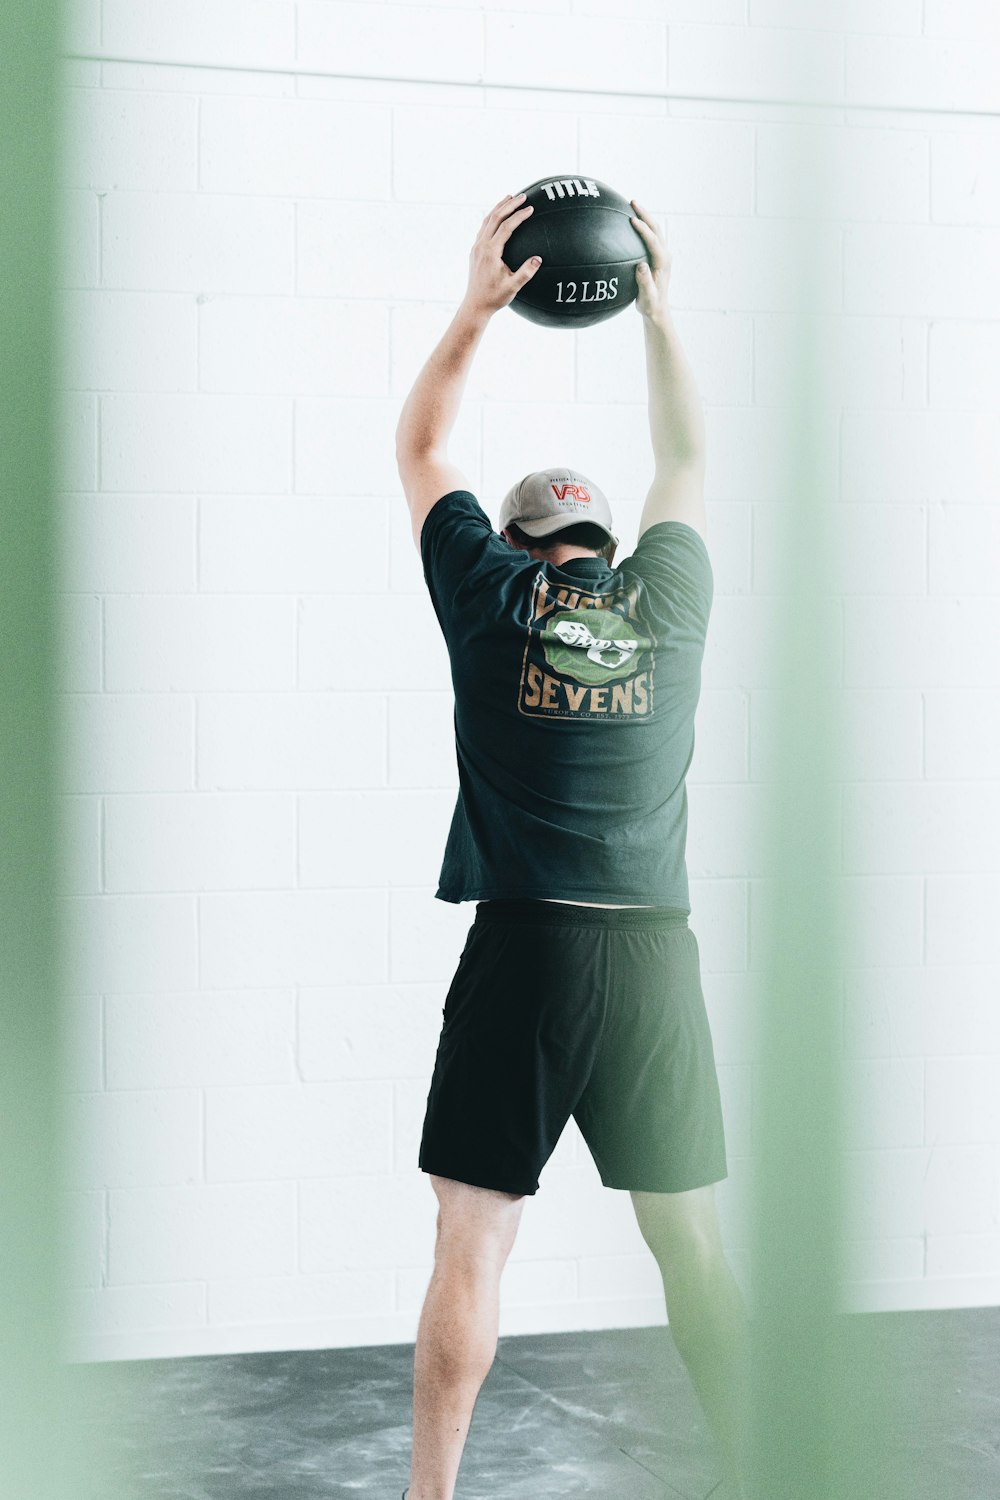 Mann in grünem Rundhals-T-Shirt und schwarzen Shorts mit schwarz-weißem Basketball